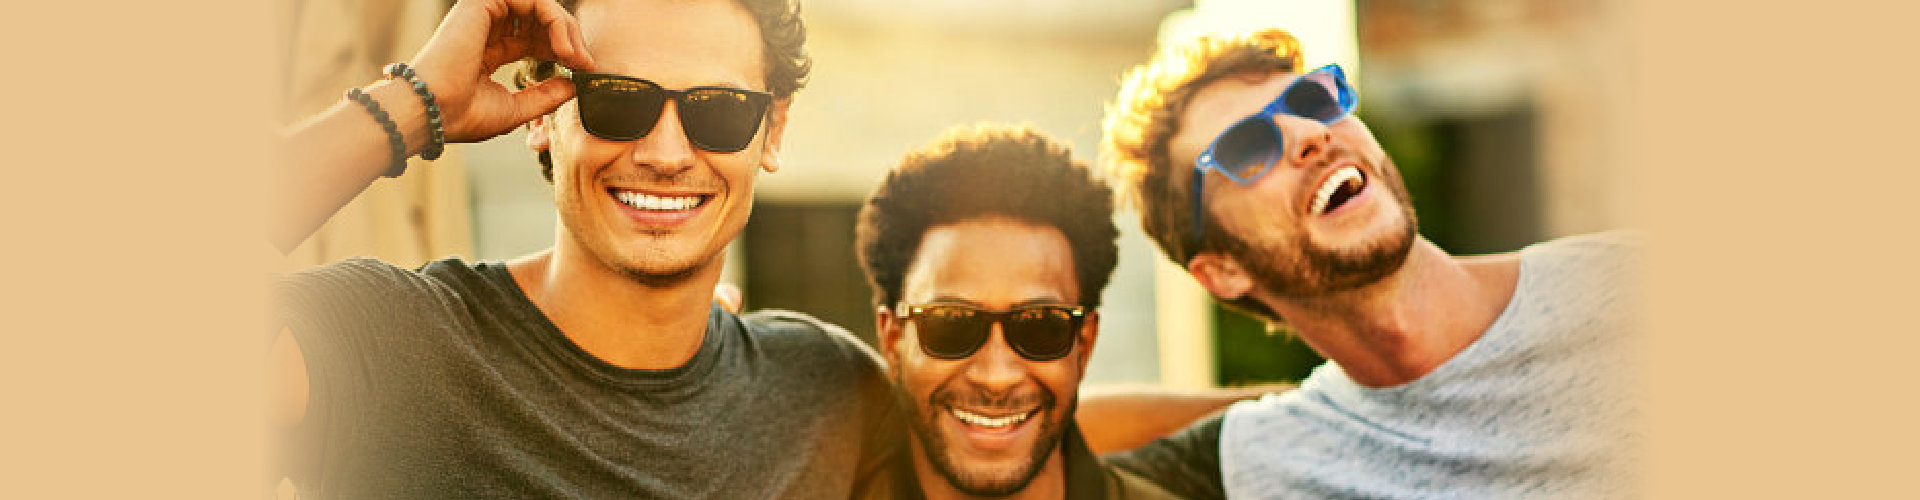 three happy guys in sunglasses